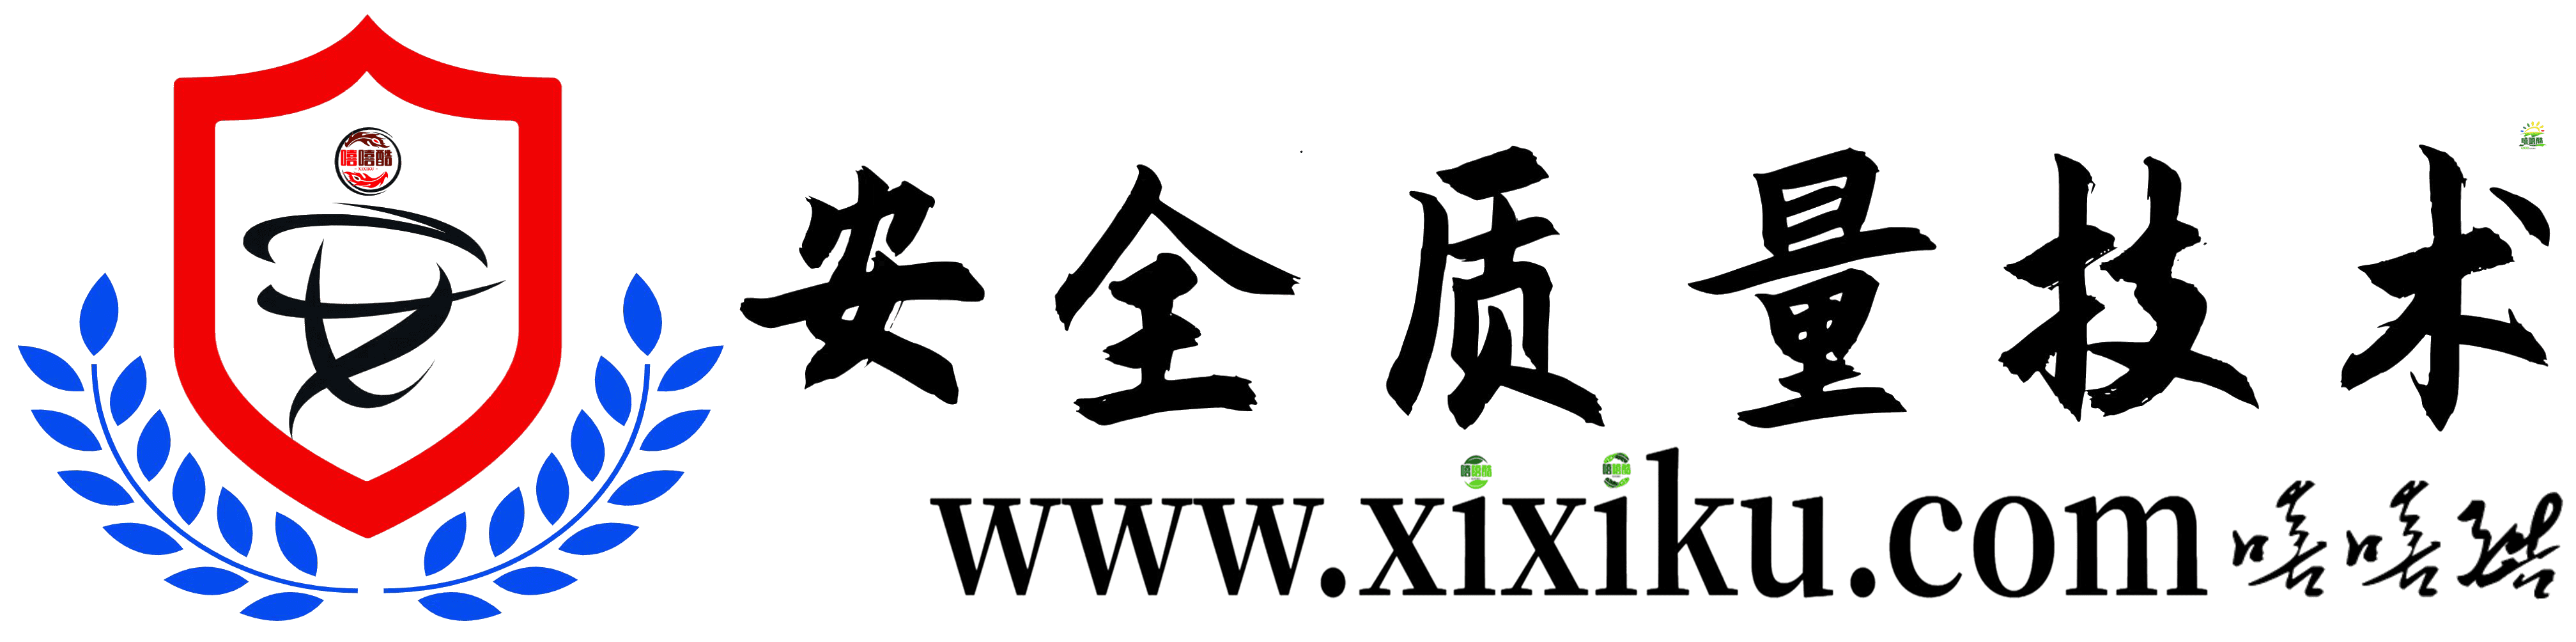 安全质量技术知识 - 嘻嘻酷 www.xixiku.com-安全质量技术知识-嘻嘻酷 www.xixiku.com